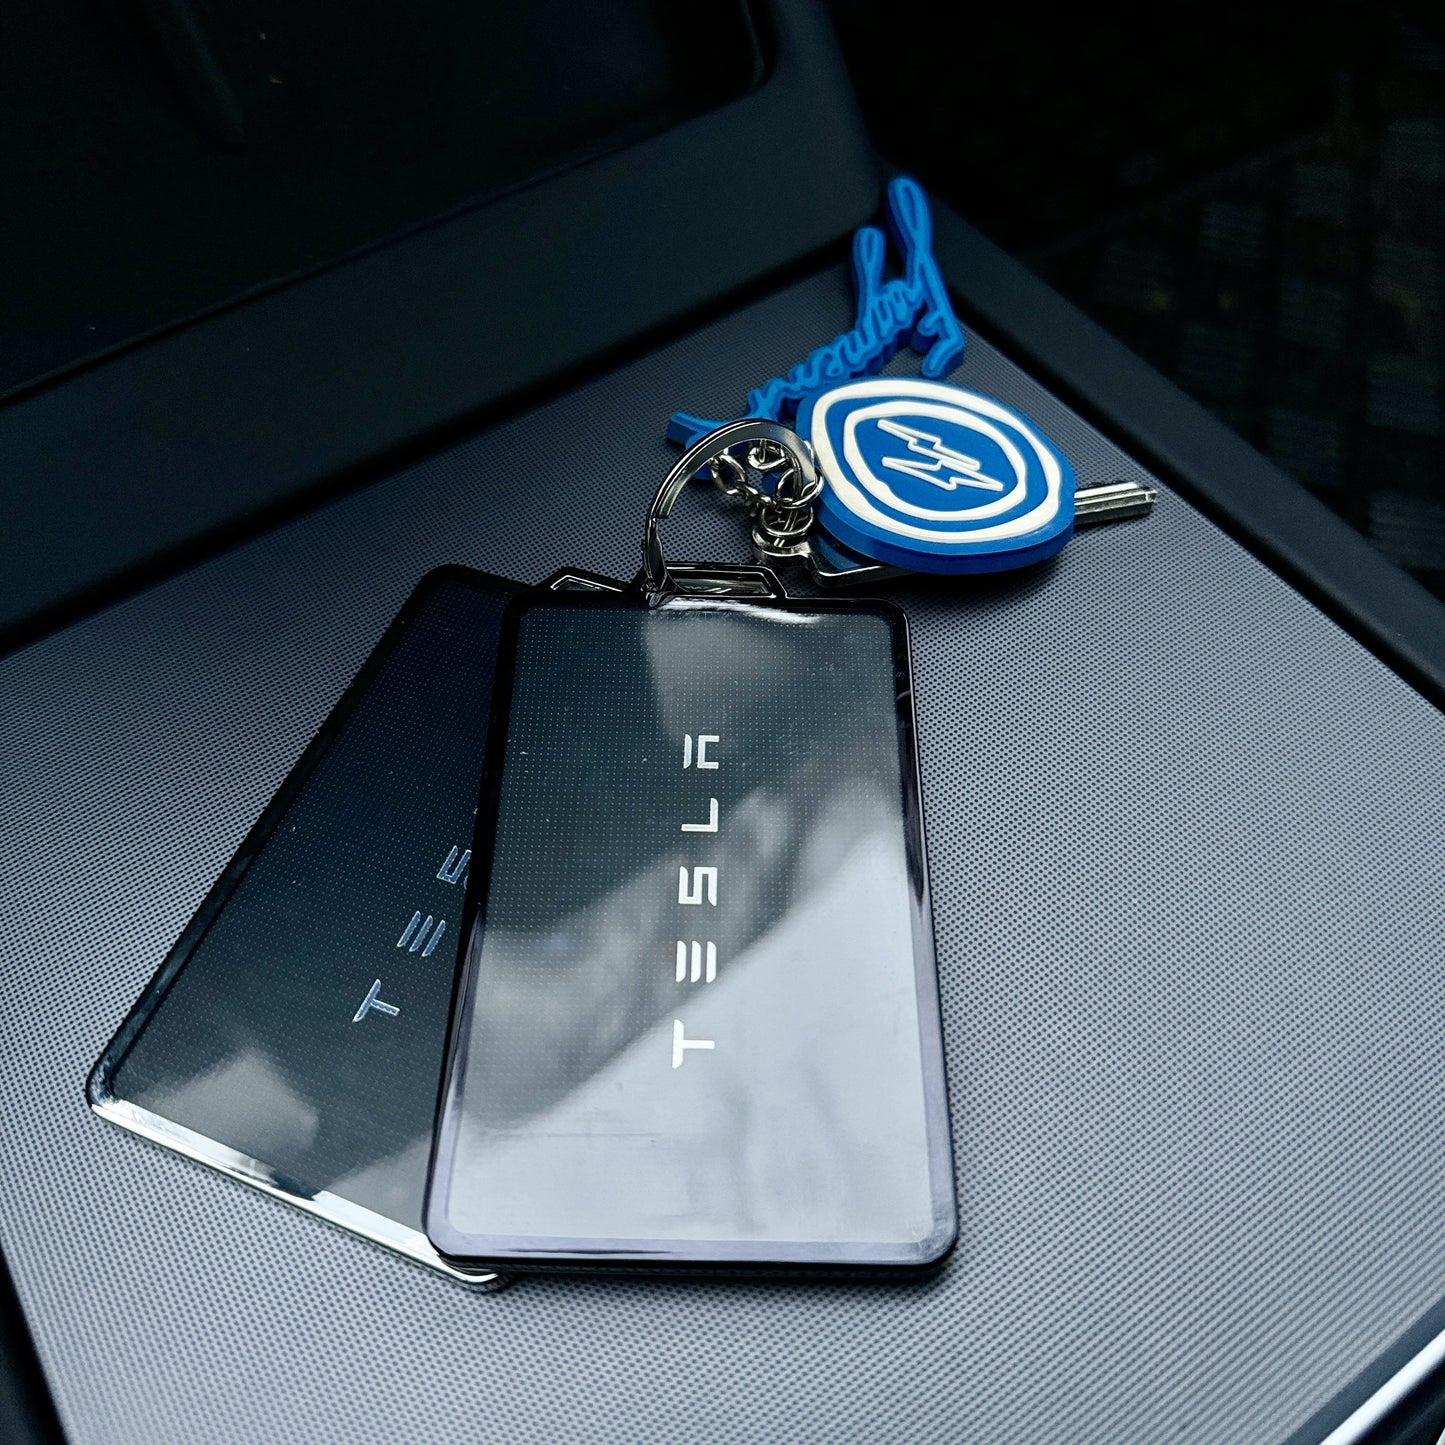 Key Card Hülle in Schwarz / Silber / Rot / Blau aus Silikon passend für Tesla Model S / 3 / X / Y Schlüsselkarten